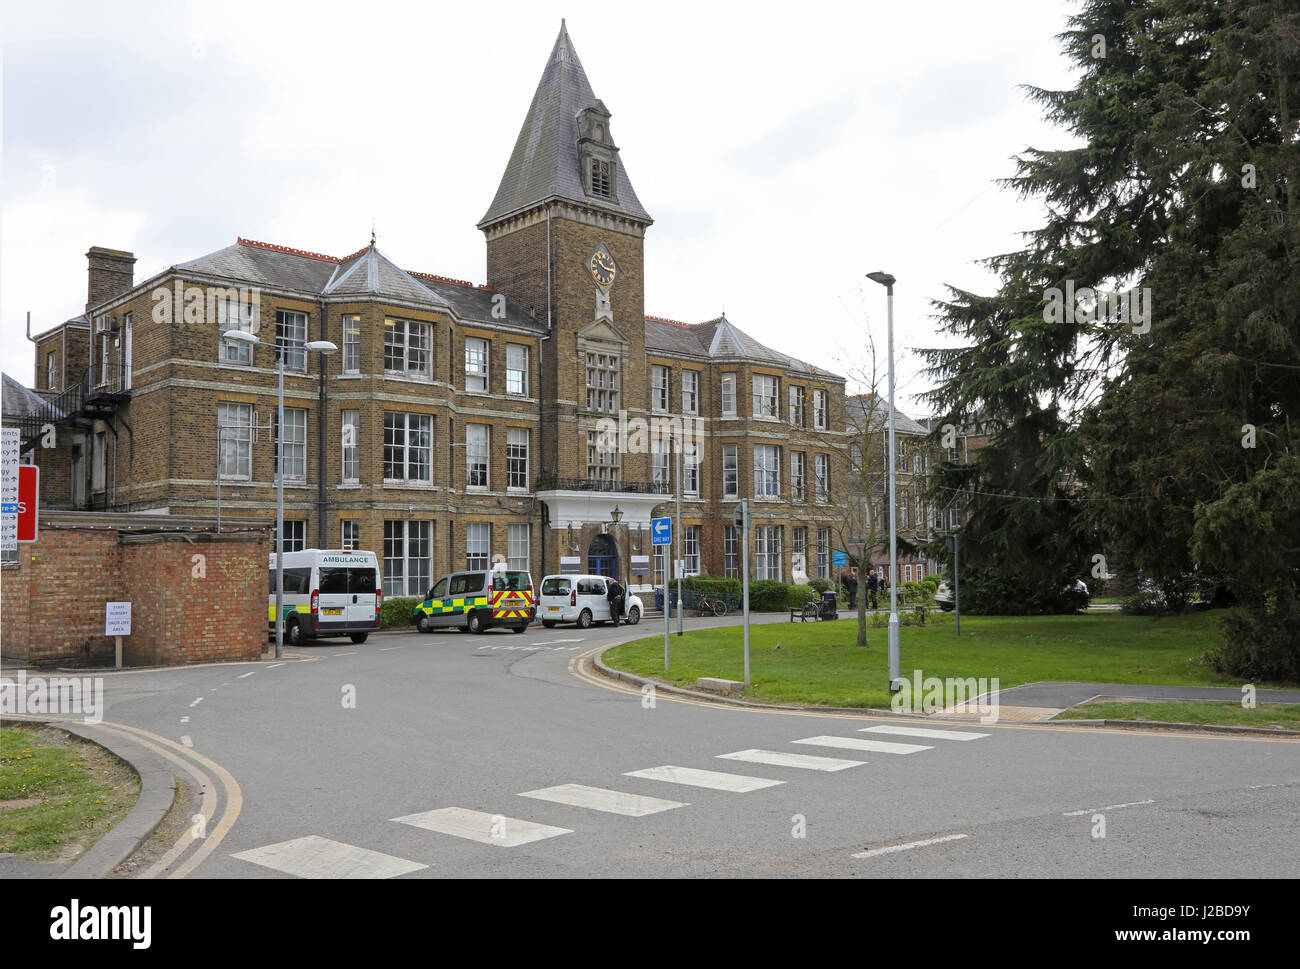 Ingresso principale al Chase Farm Hospital di Enfield, a nord di Londra, Regno Unito. Questa originale struttura vittoriano è stato in gran parte sostituito dai nuovi edifici. Foto Stock